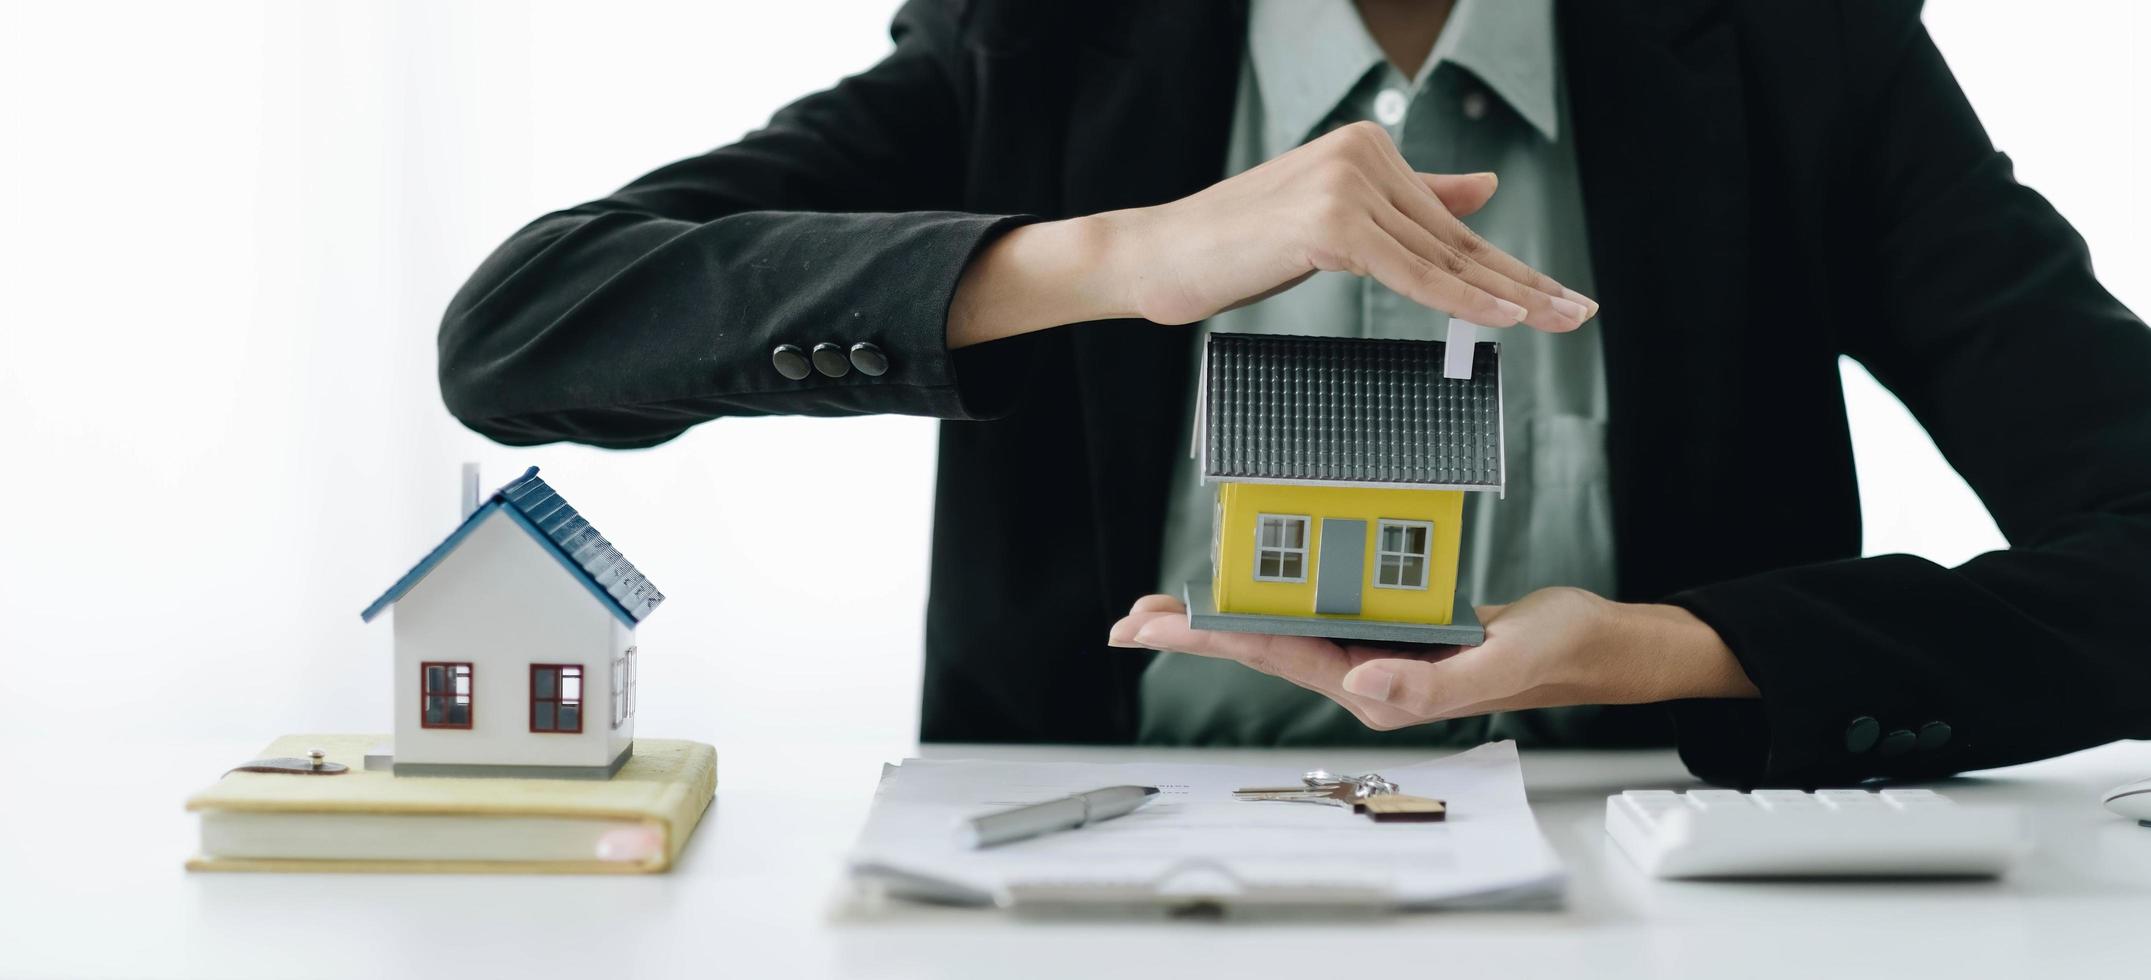 miniatuur huis in de handen van een aziatische vrouw makelaar woningkrediet werken op kantoor. foto